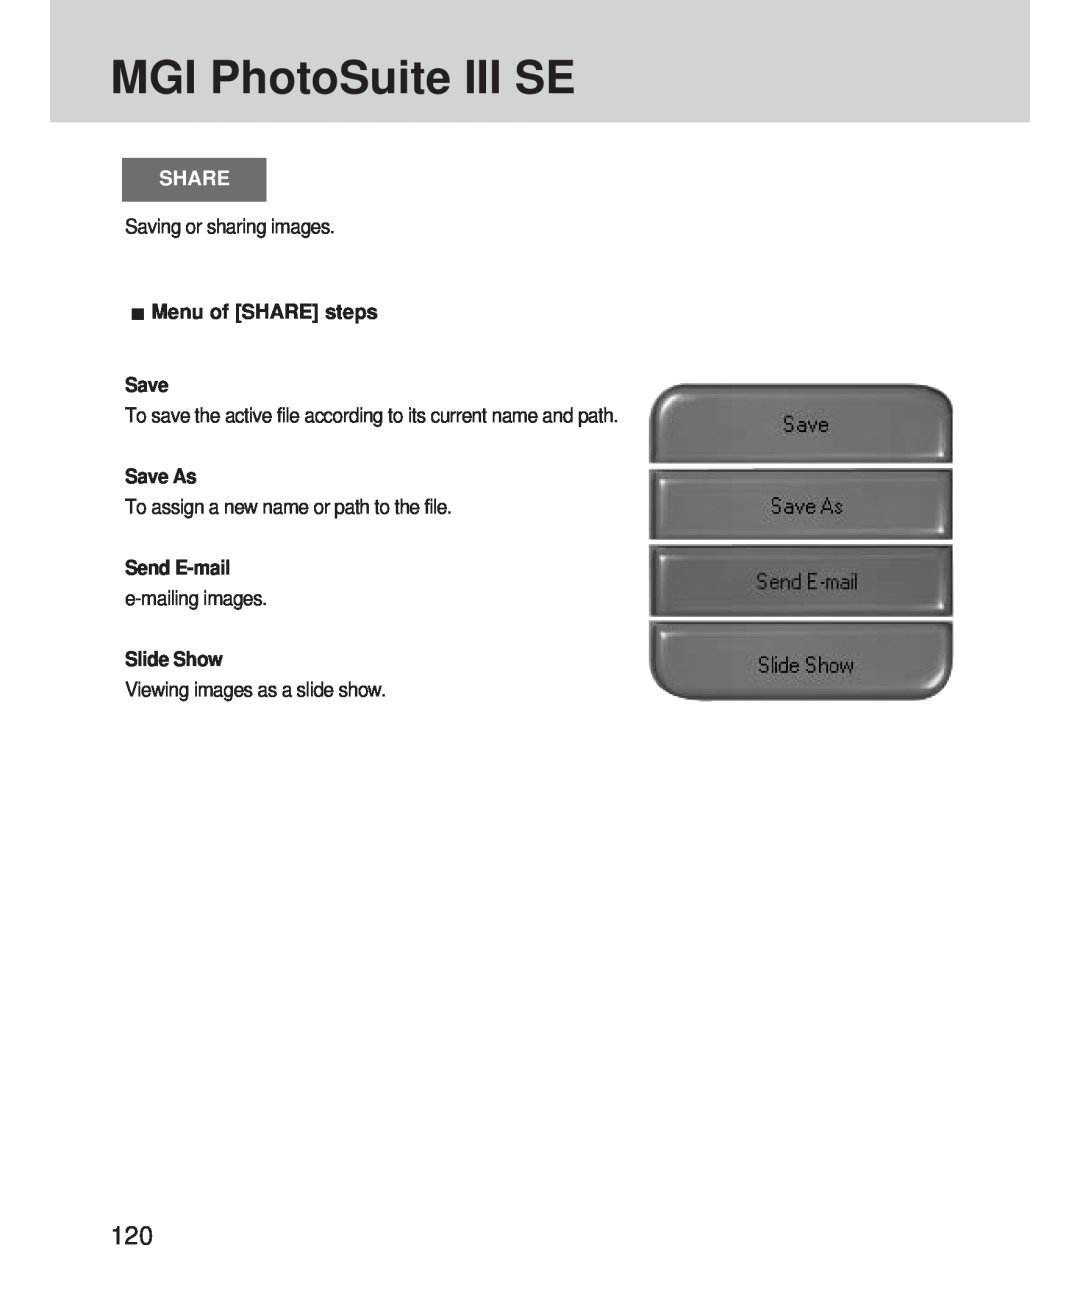 Samsung 420 manual MGI PhotoSuite III SE, Share, Menu of SHARE steps Save, Save As, Send E-mail, Slide Show 